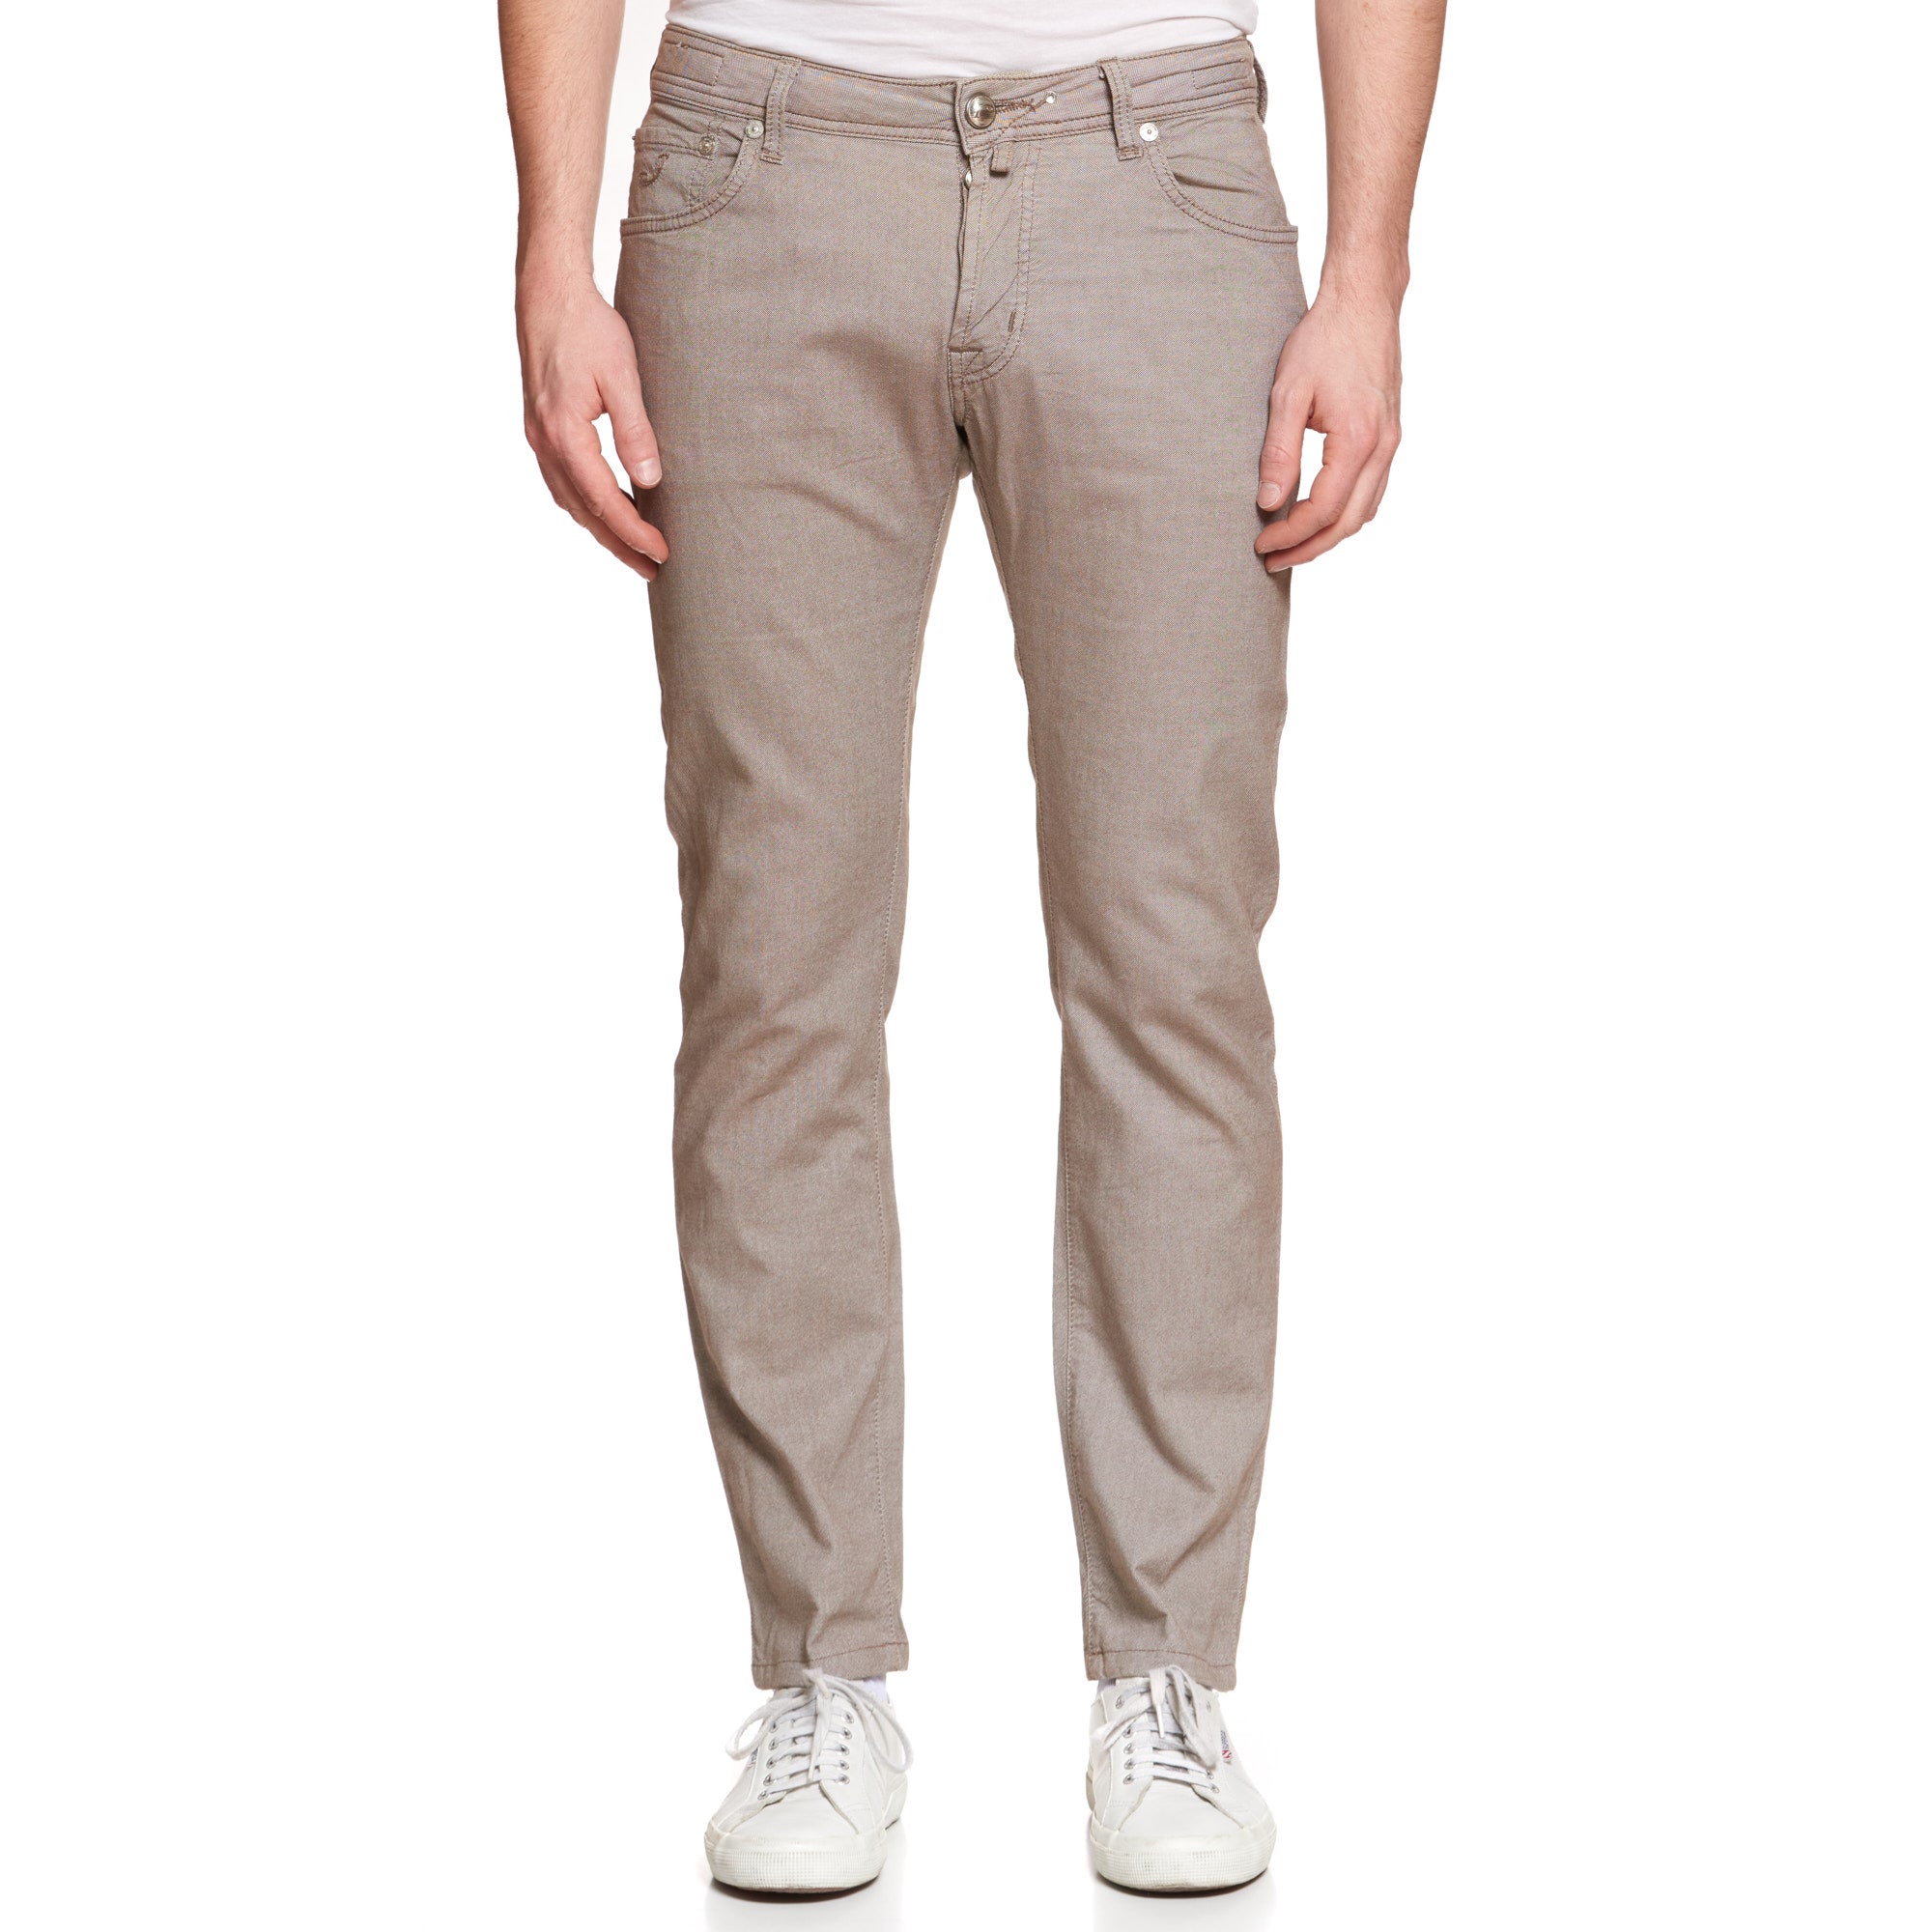 JACOB COHEN W622 Comfort Light Brown Cotton Stretch Slim Fit Jeans Pants US 33